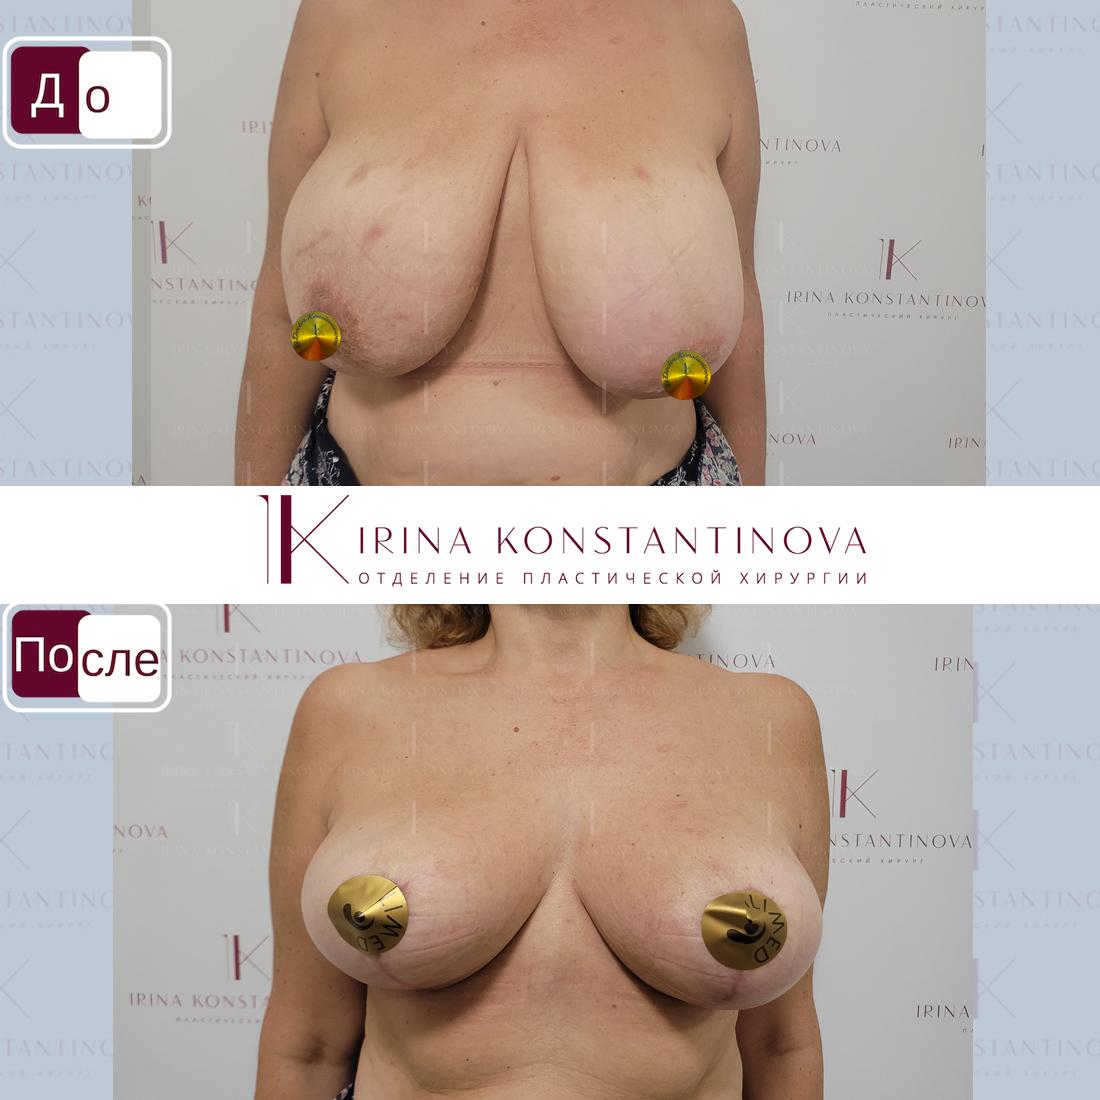 как проходит операция по уменьшению груди у женщин фото 14